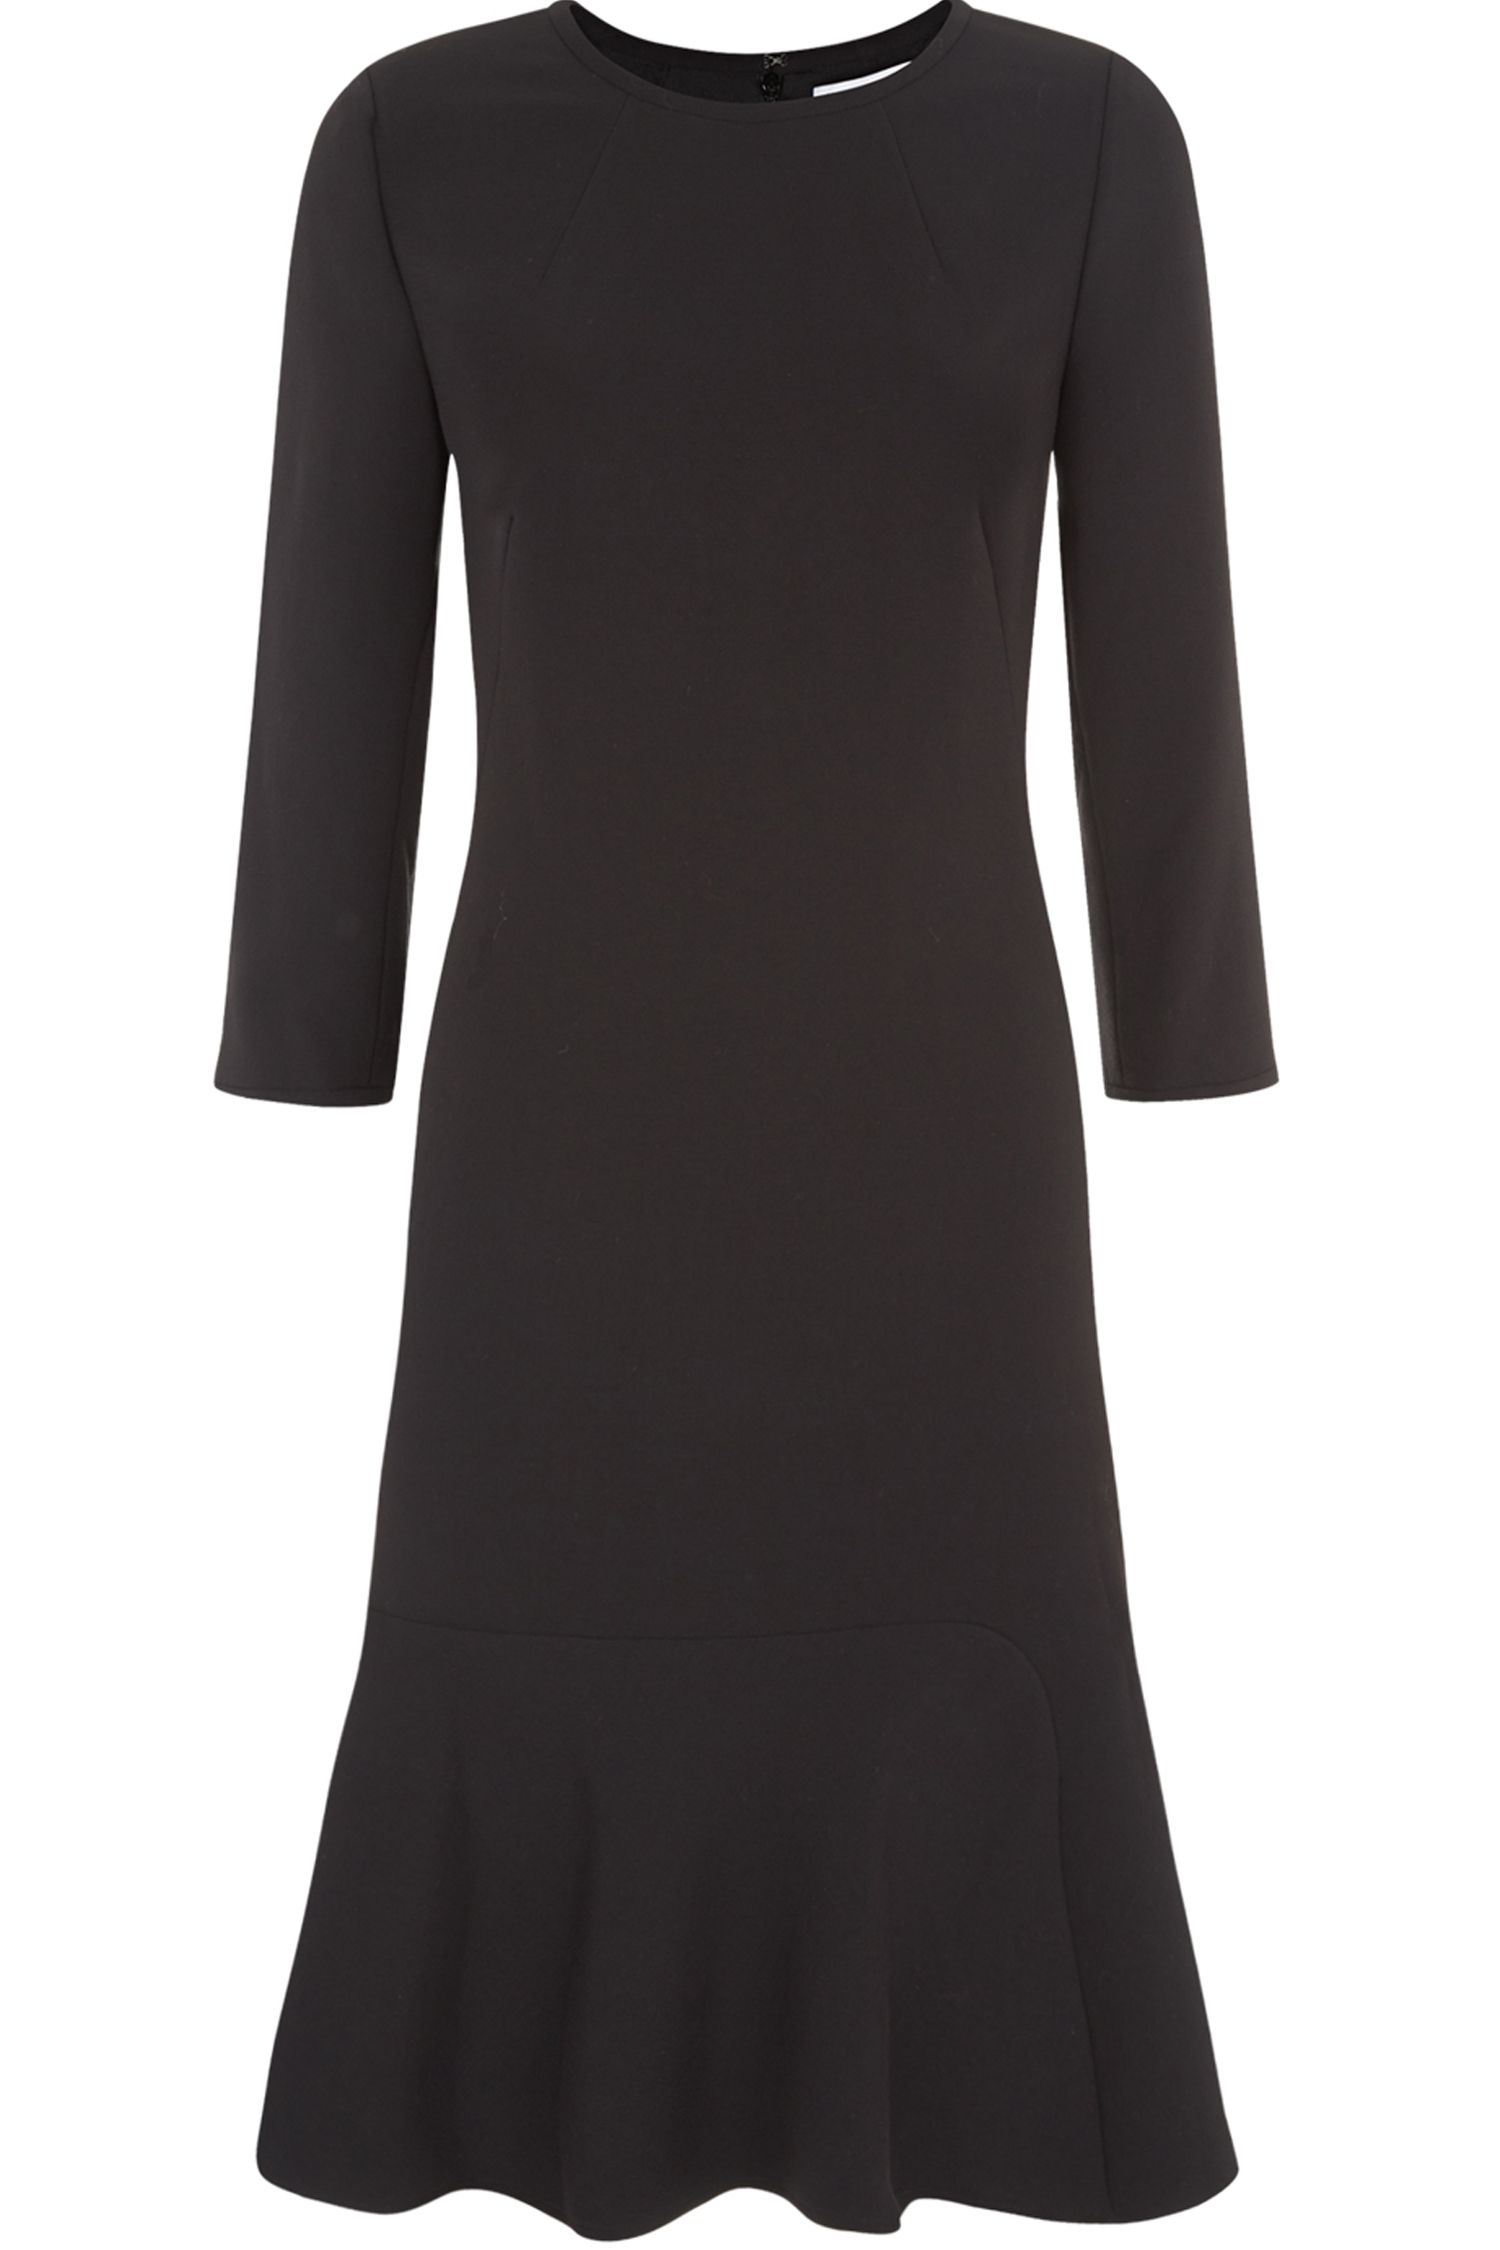 Fenn wright manson Karen Dress in Black | Lyst